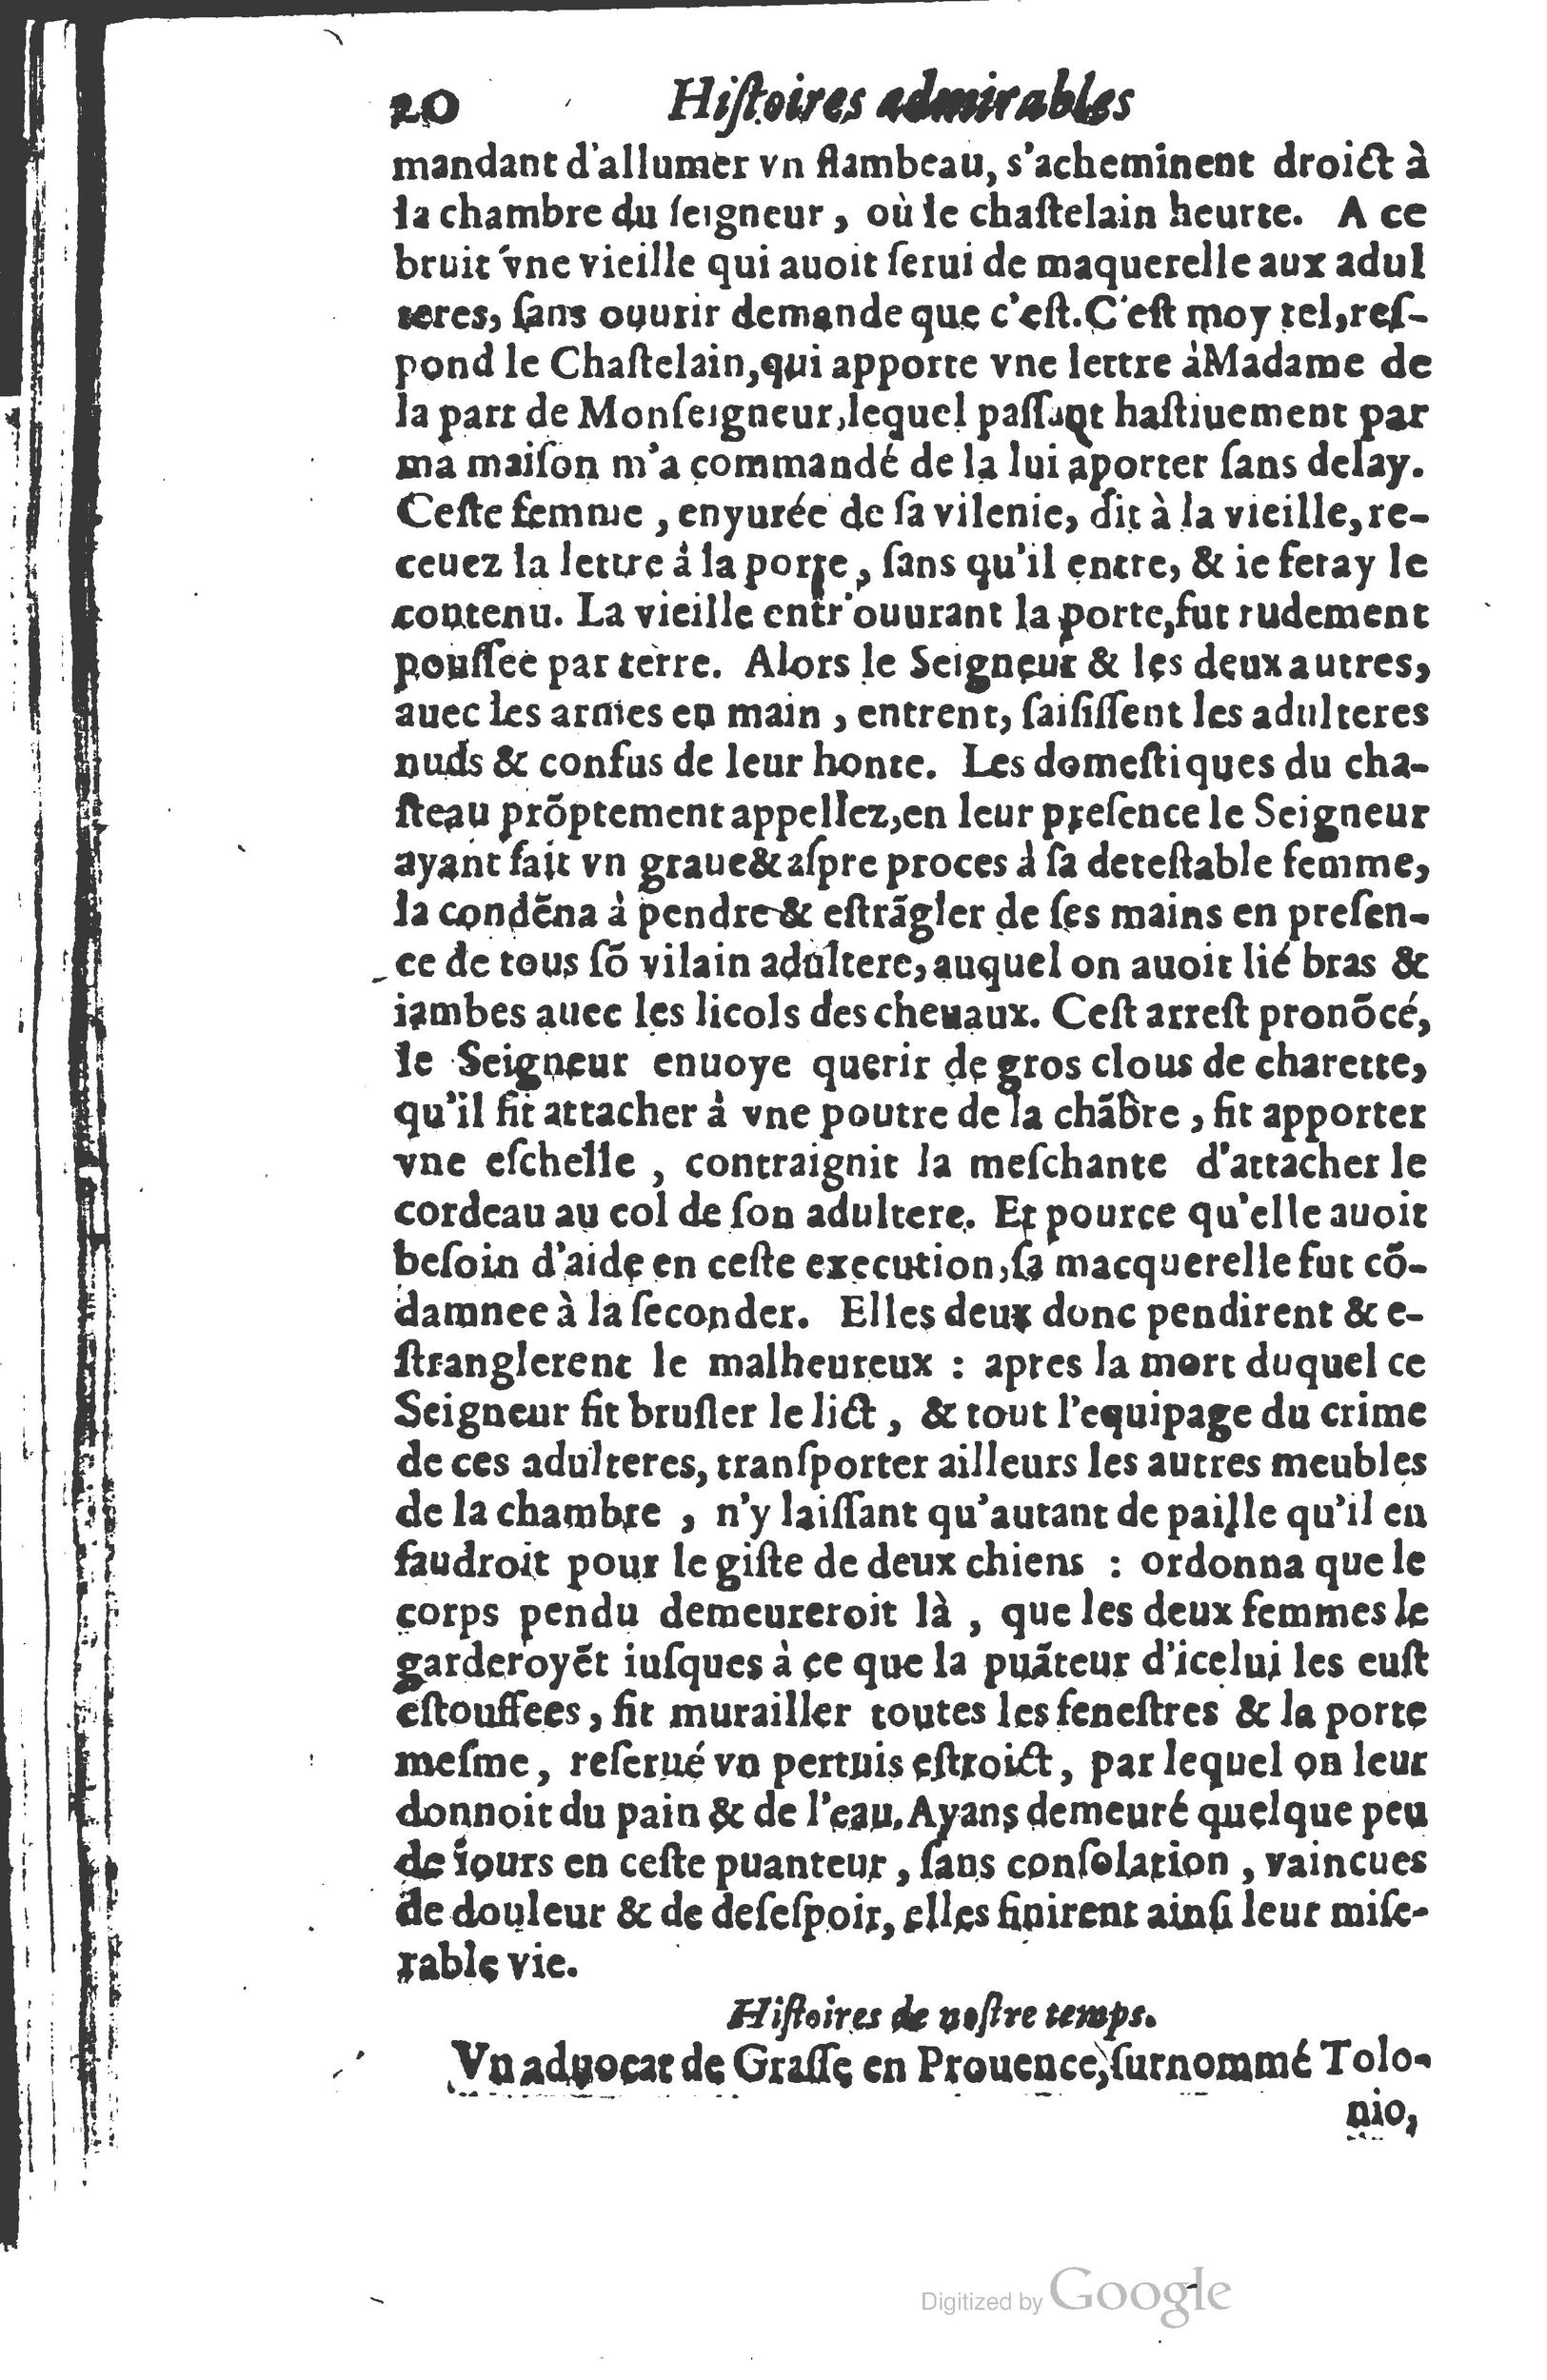 1610 Trésor d’histoires admirables et mémorables de nostre temps Marceau Princeton_Page_0041.jpg